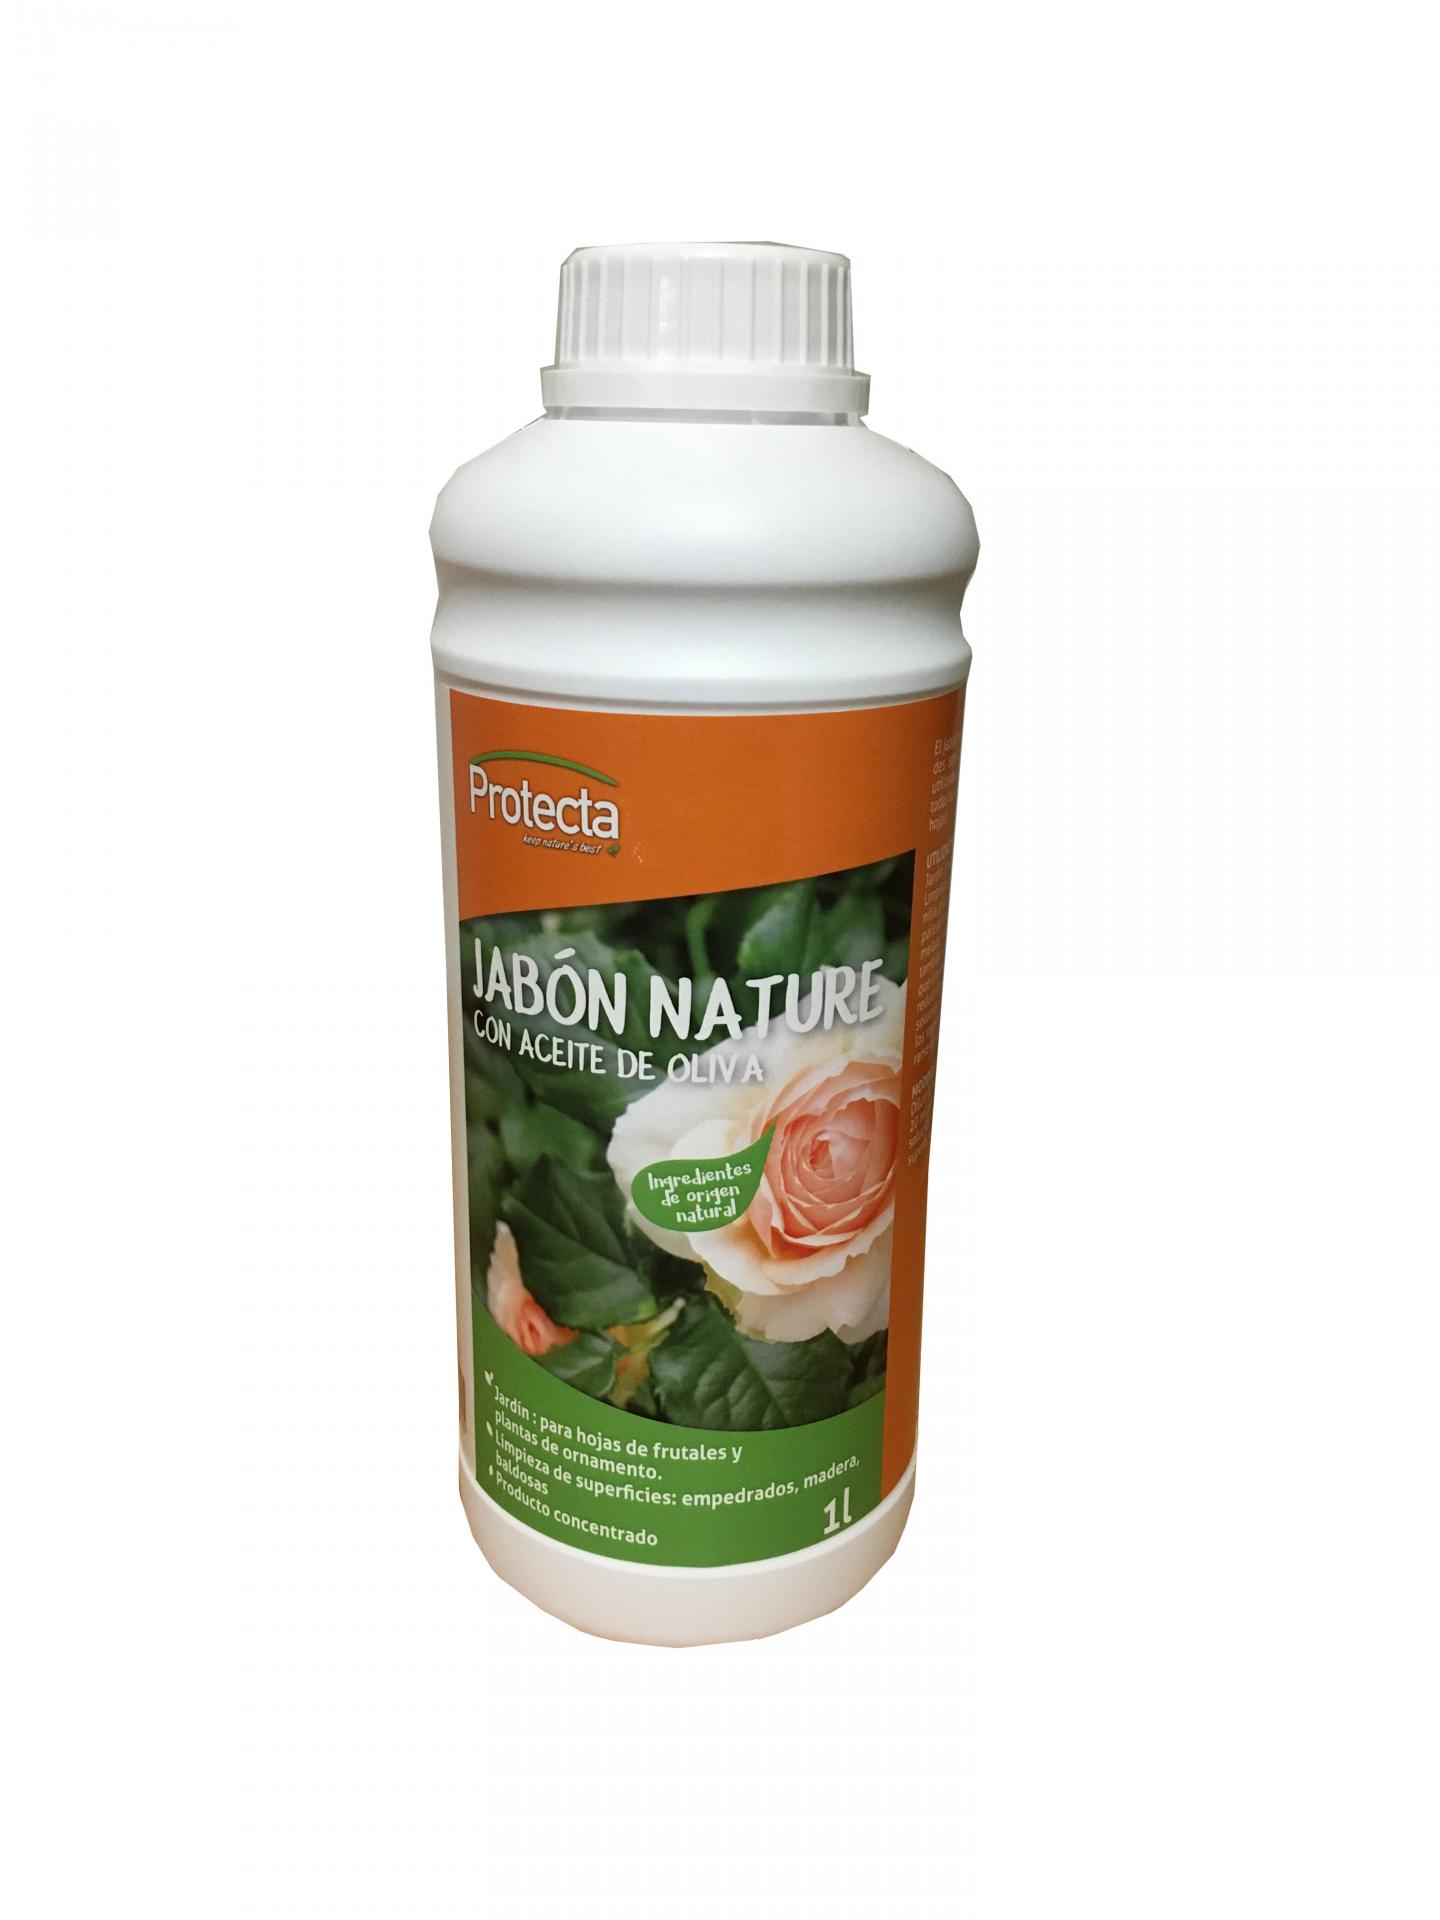 Jabon Nature con aceite de oliva Protecta 1L